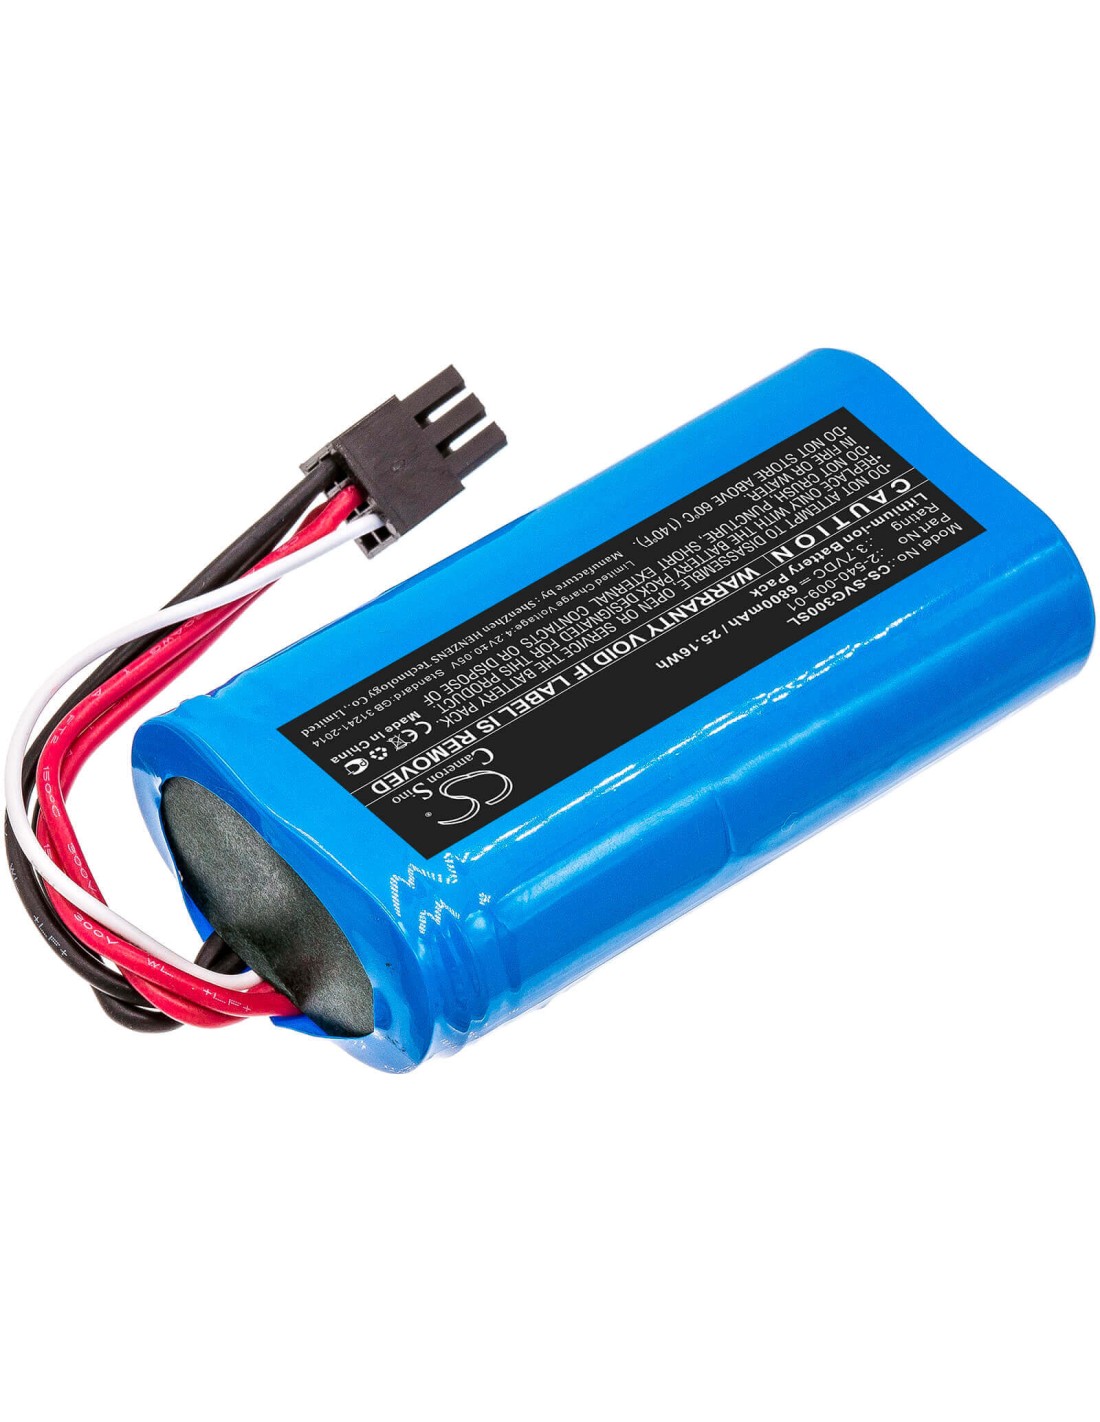 Battery for Soundcast, 21391-vgbt03a, Sud-vgbt03a, Vg3 3.7V, 6800mAh - 25.16Wh